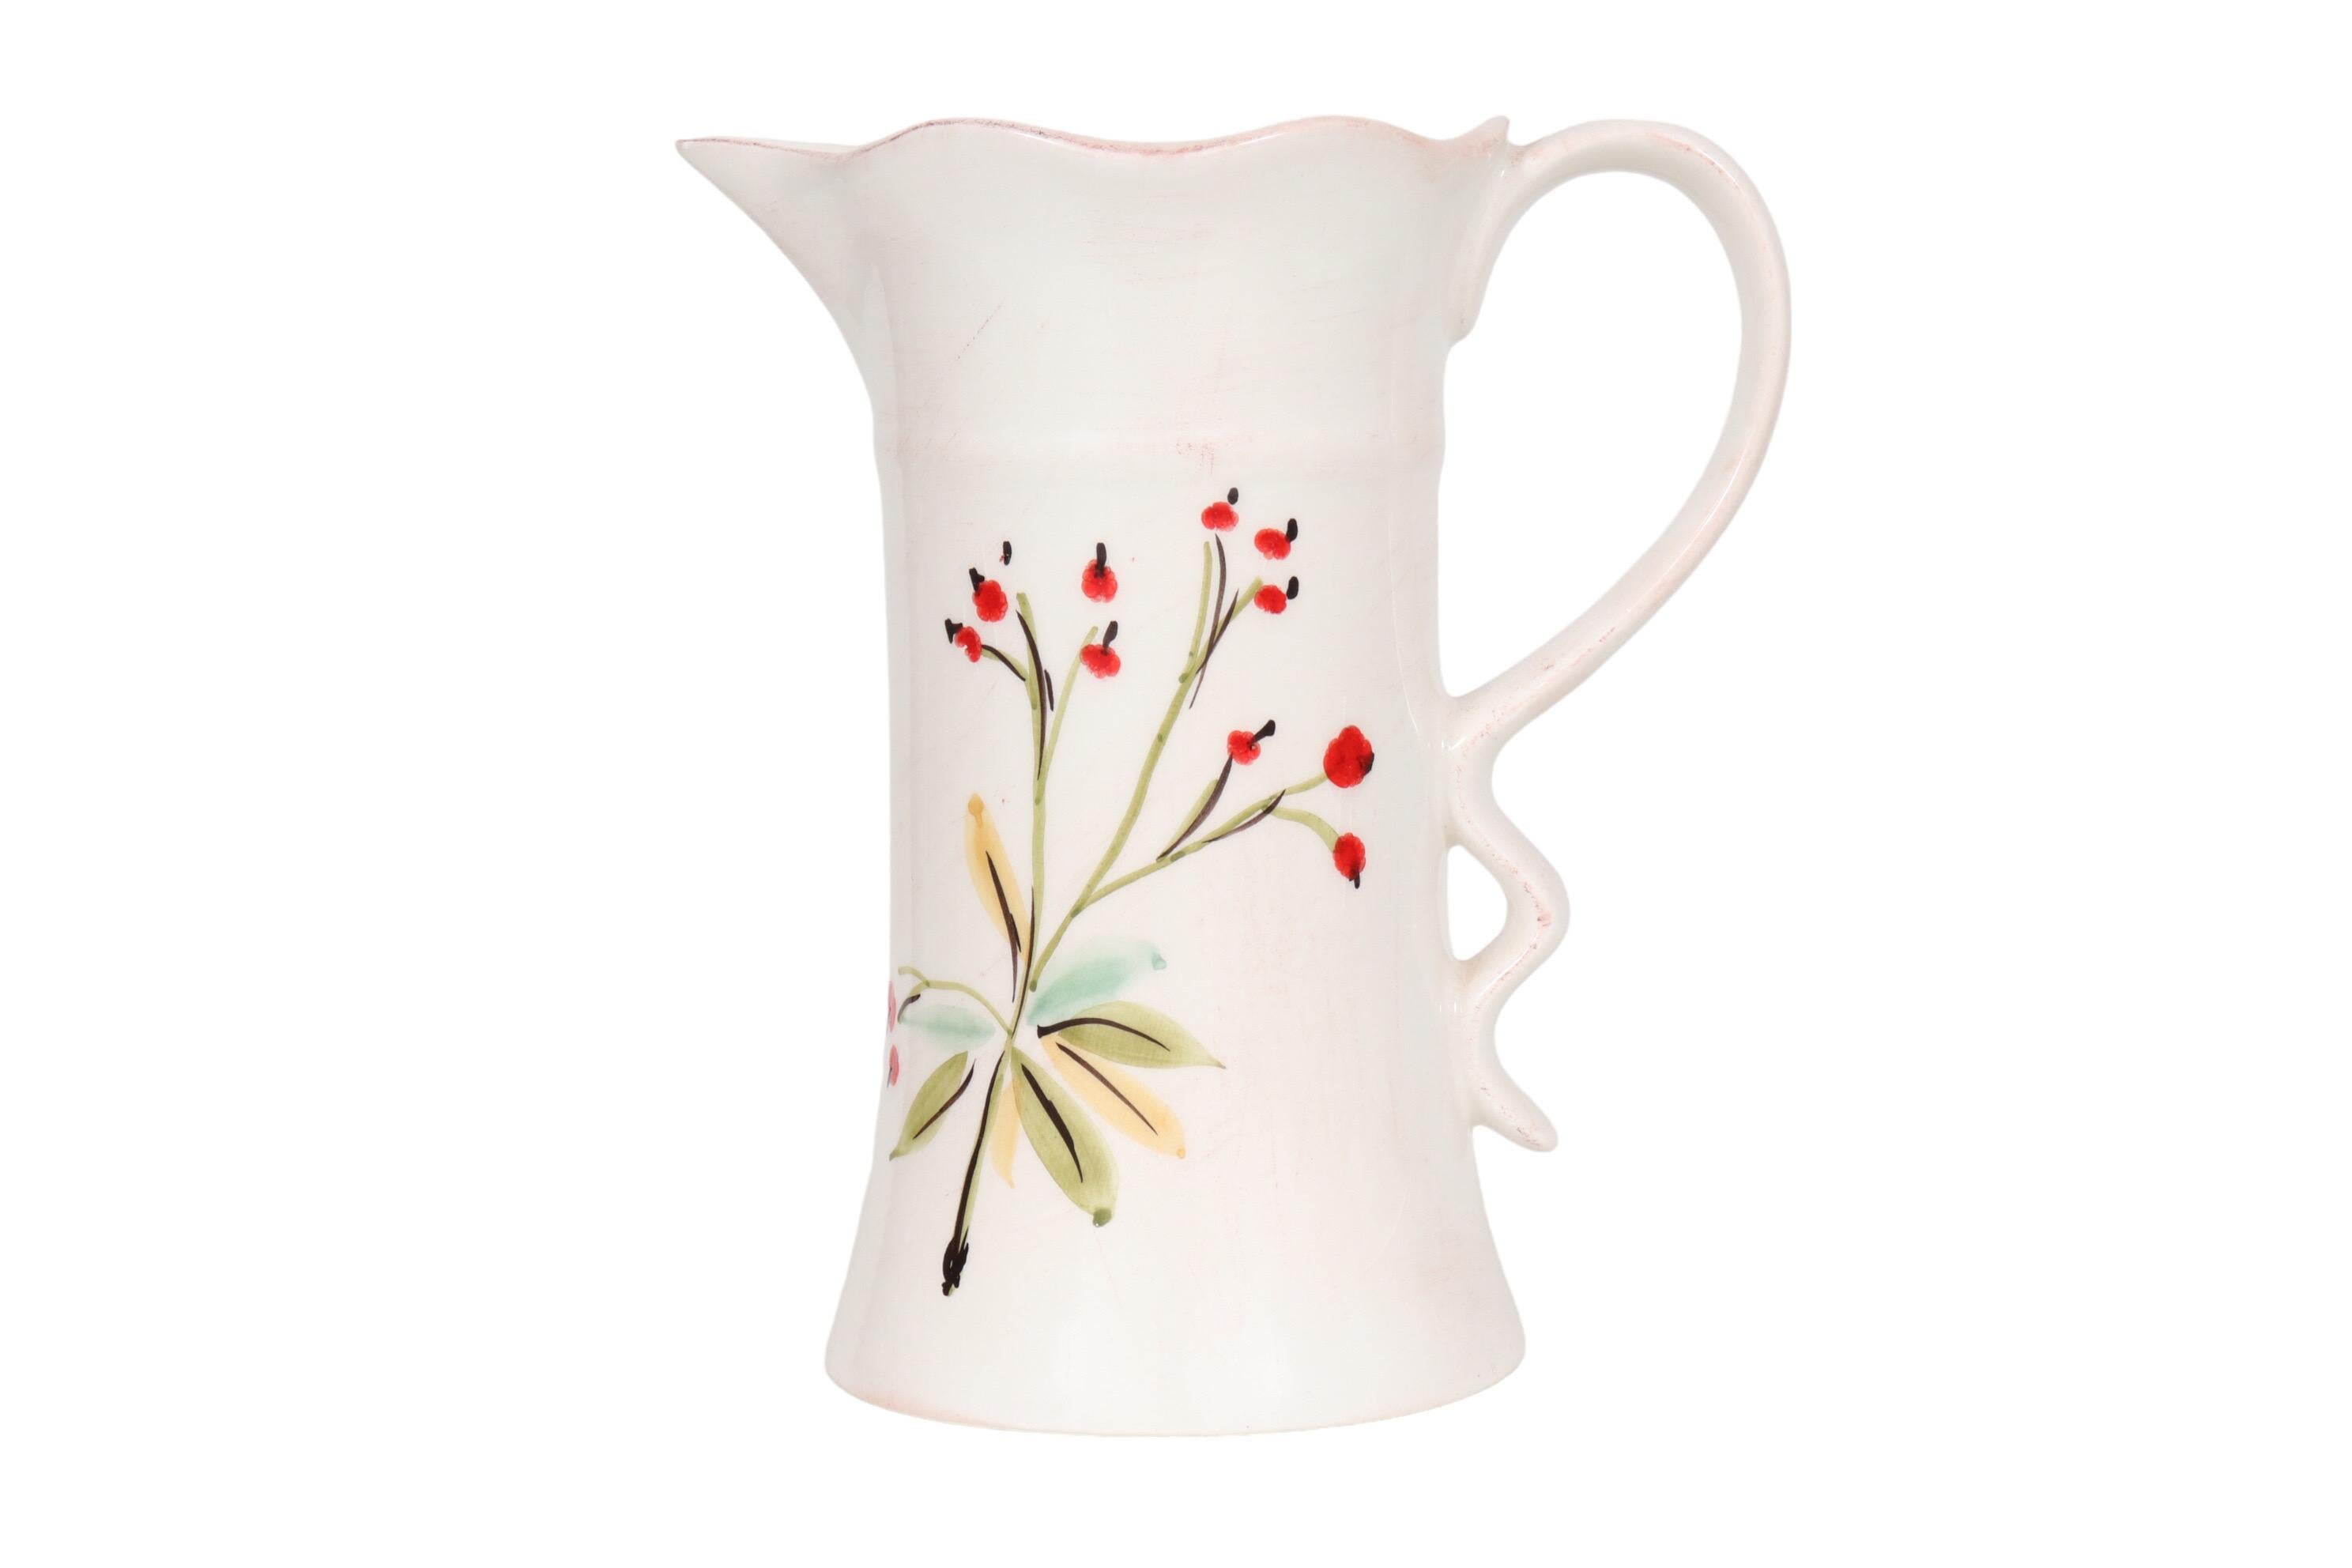 Pichet en céramique italien fabriqué par Tiriduzzi. Peint à la main avec une simple gerbe florale de coquelicots rouges sur fond blanc. La lèvre est légèrement ébouriffée, cette vague se reflétant dans la base de l'anse en forme de boucle. Marqué en